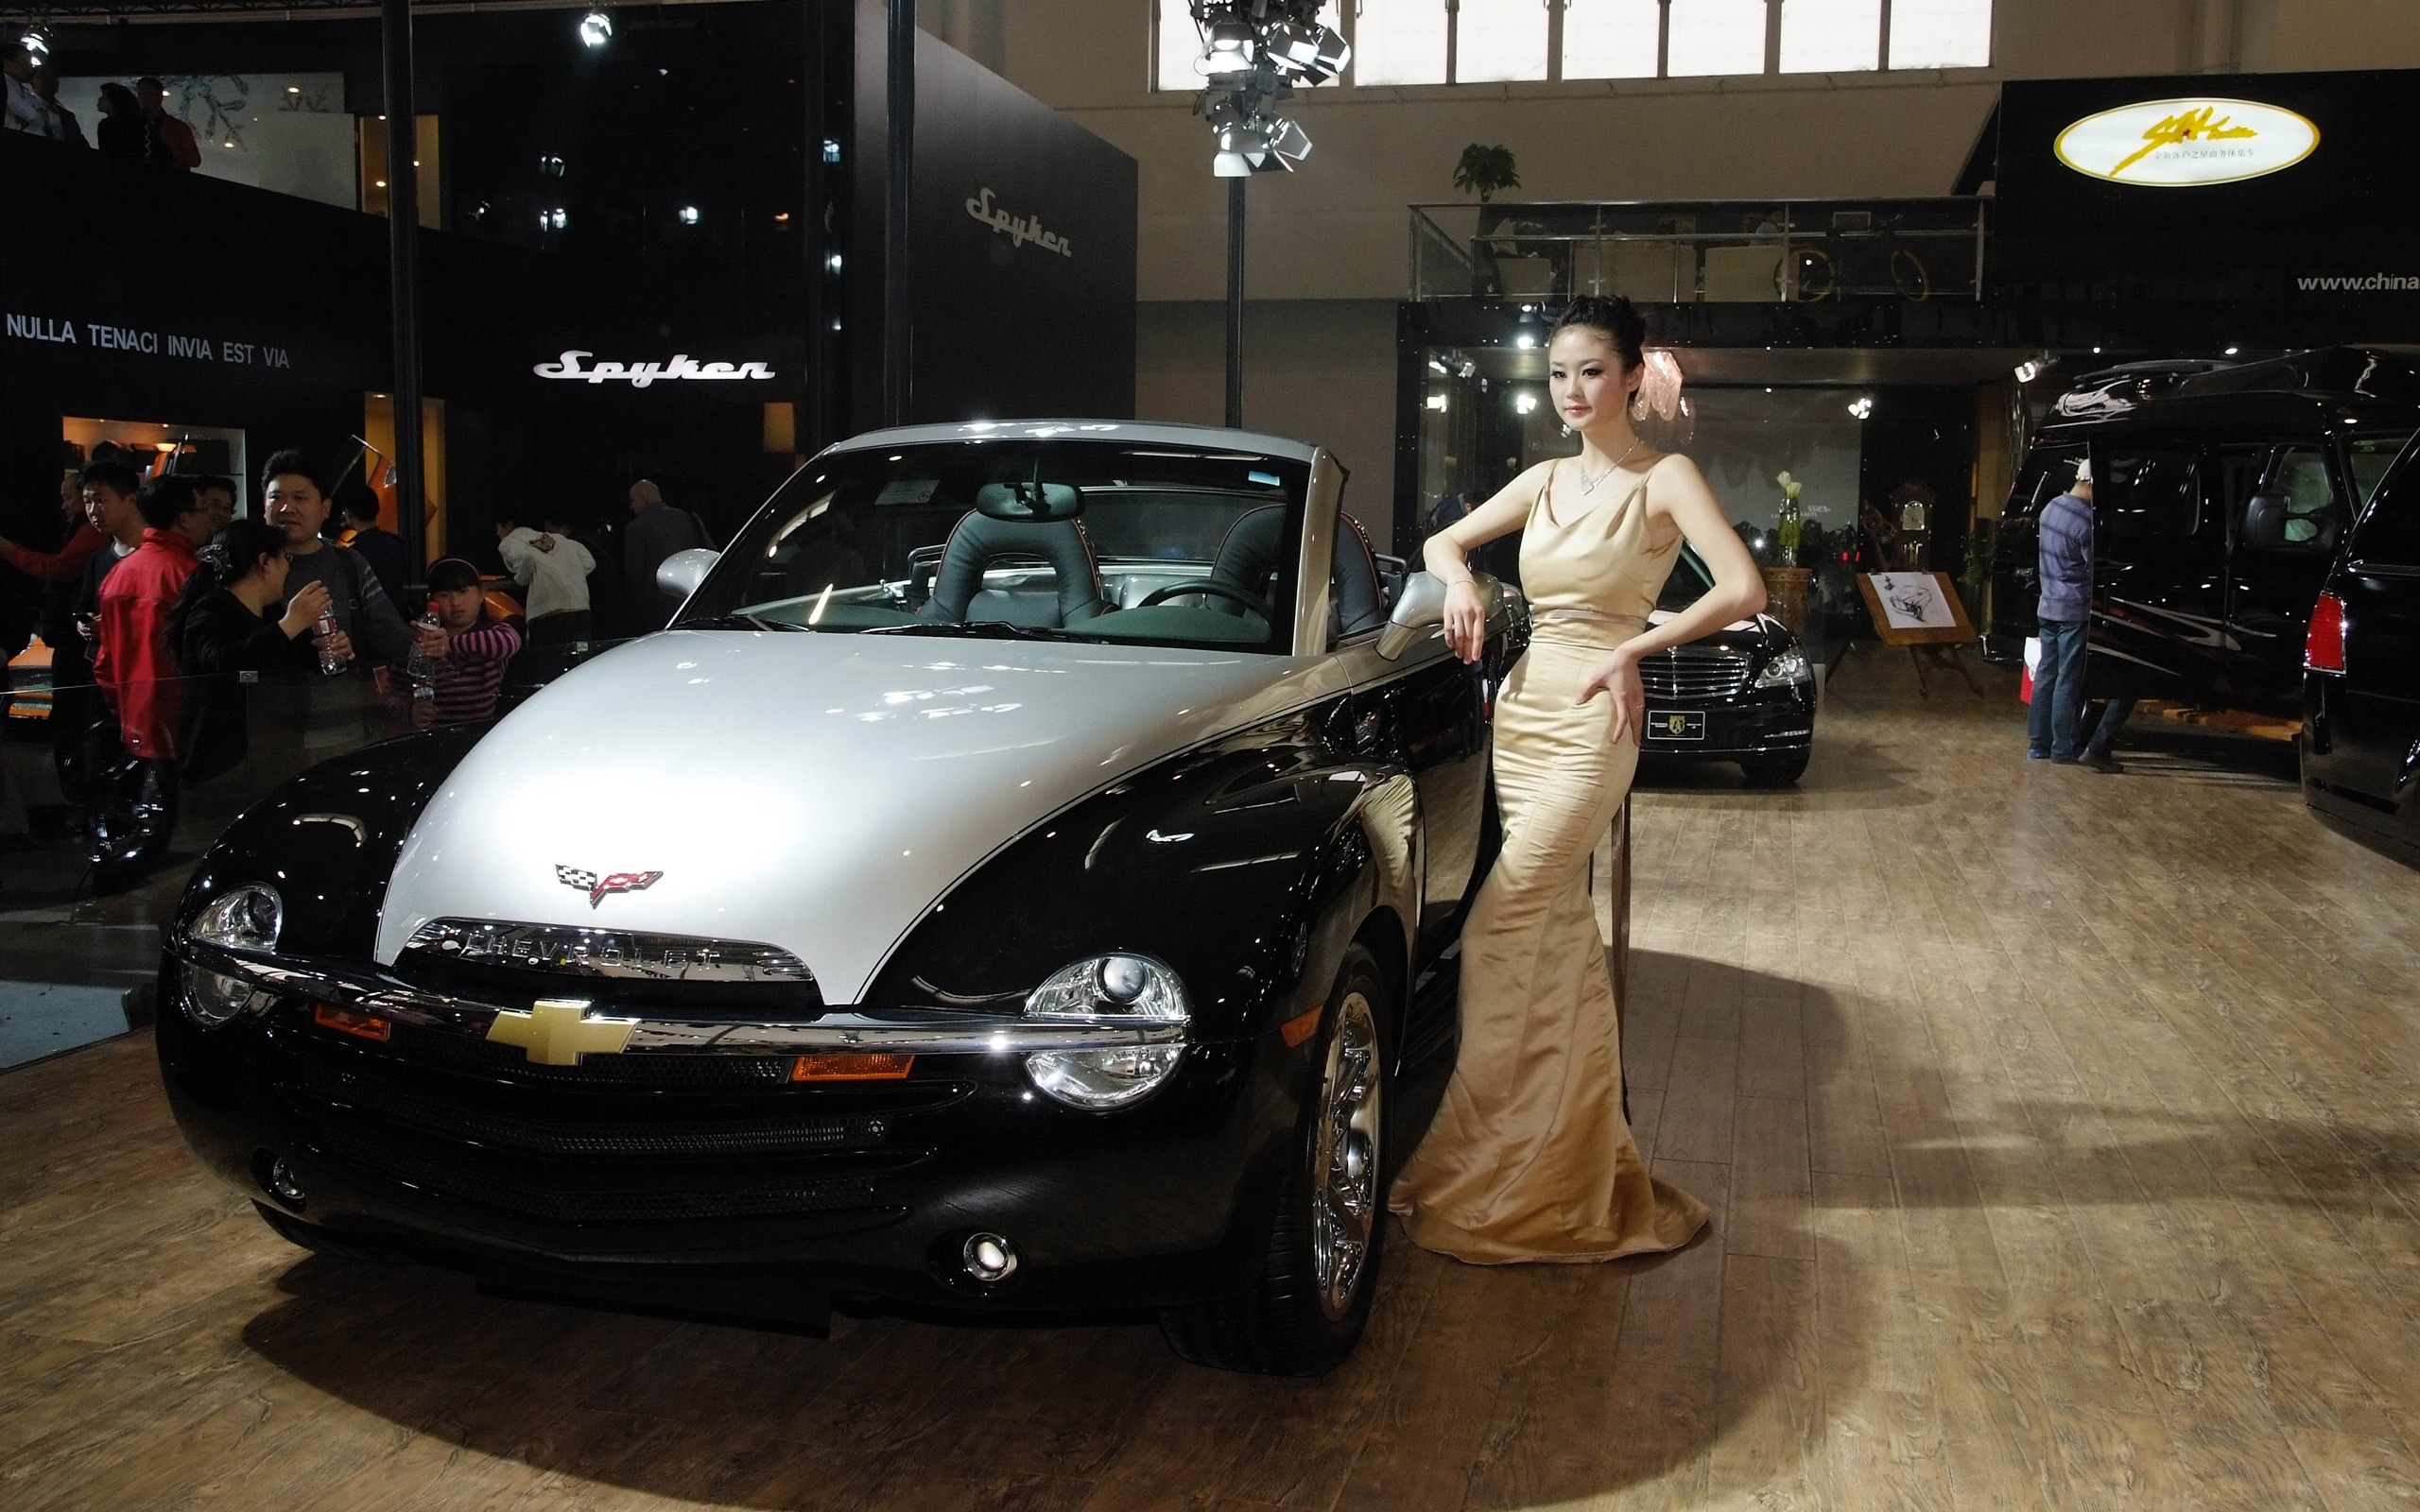 2010北京国际车展 香车美女 (螺纹钢作品)15 - 2560x1600